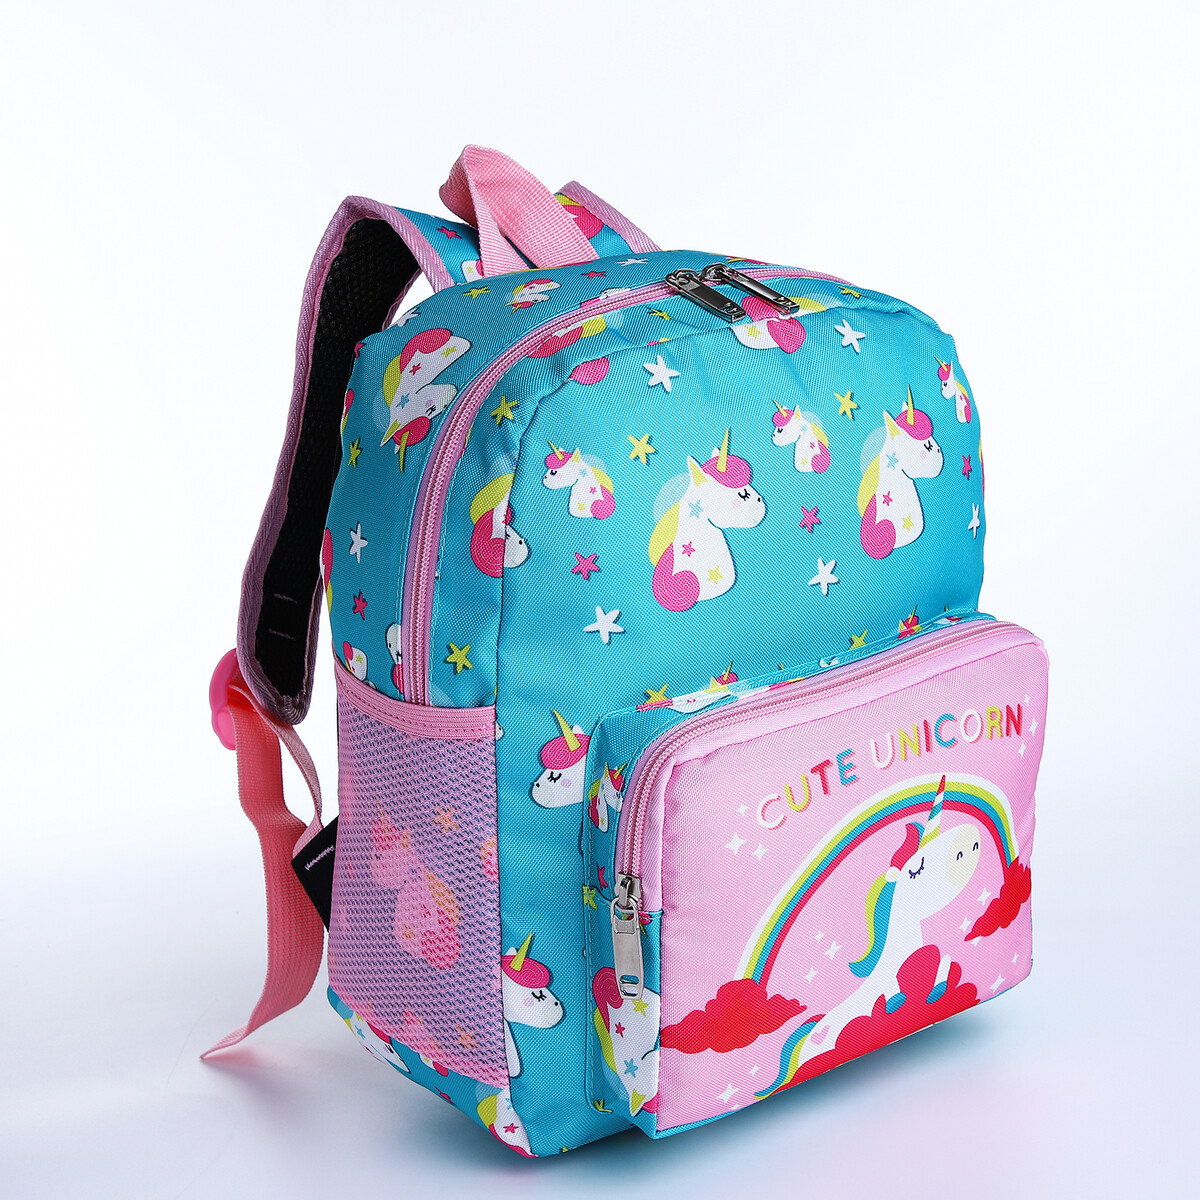 Рюкзак детский на молнии, 3 наружных кармана, цвет бирюзовый/розовый рюкзак на молнии 3 наружных кармана бирюзовый